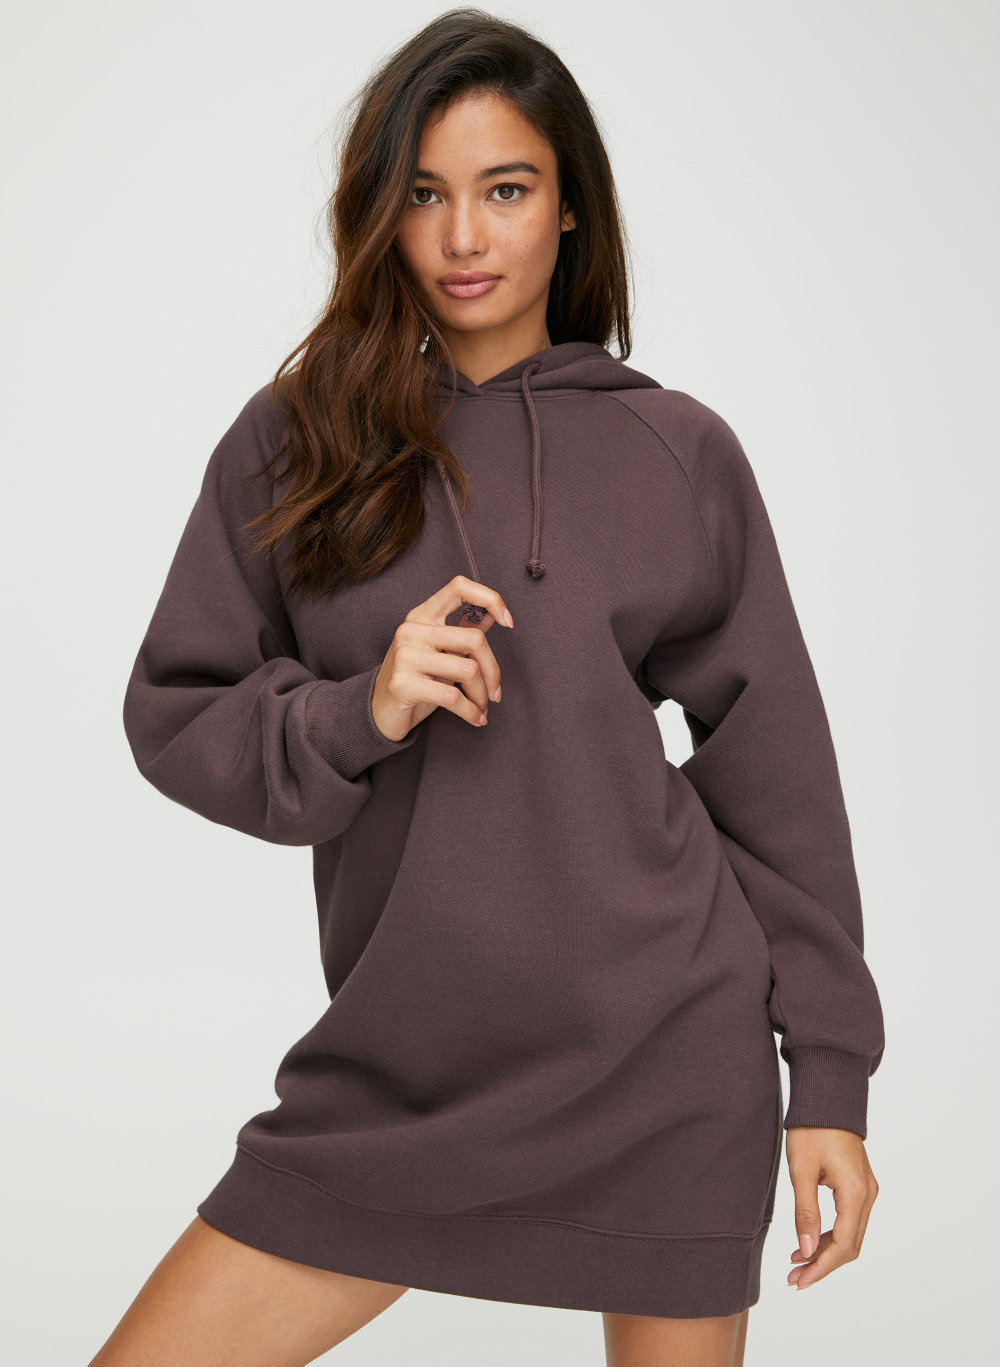 hooded sweatshirt dress canada